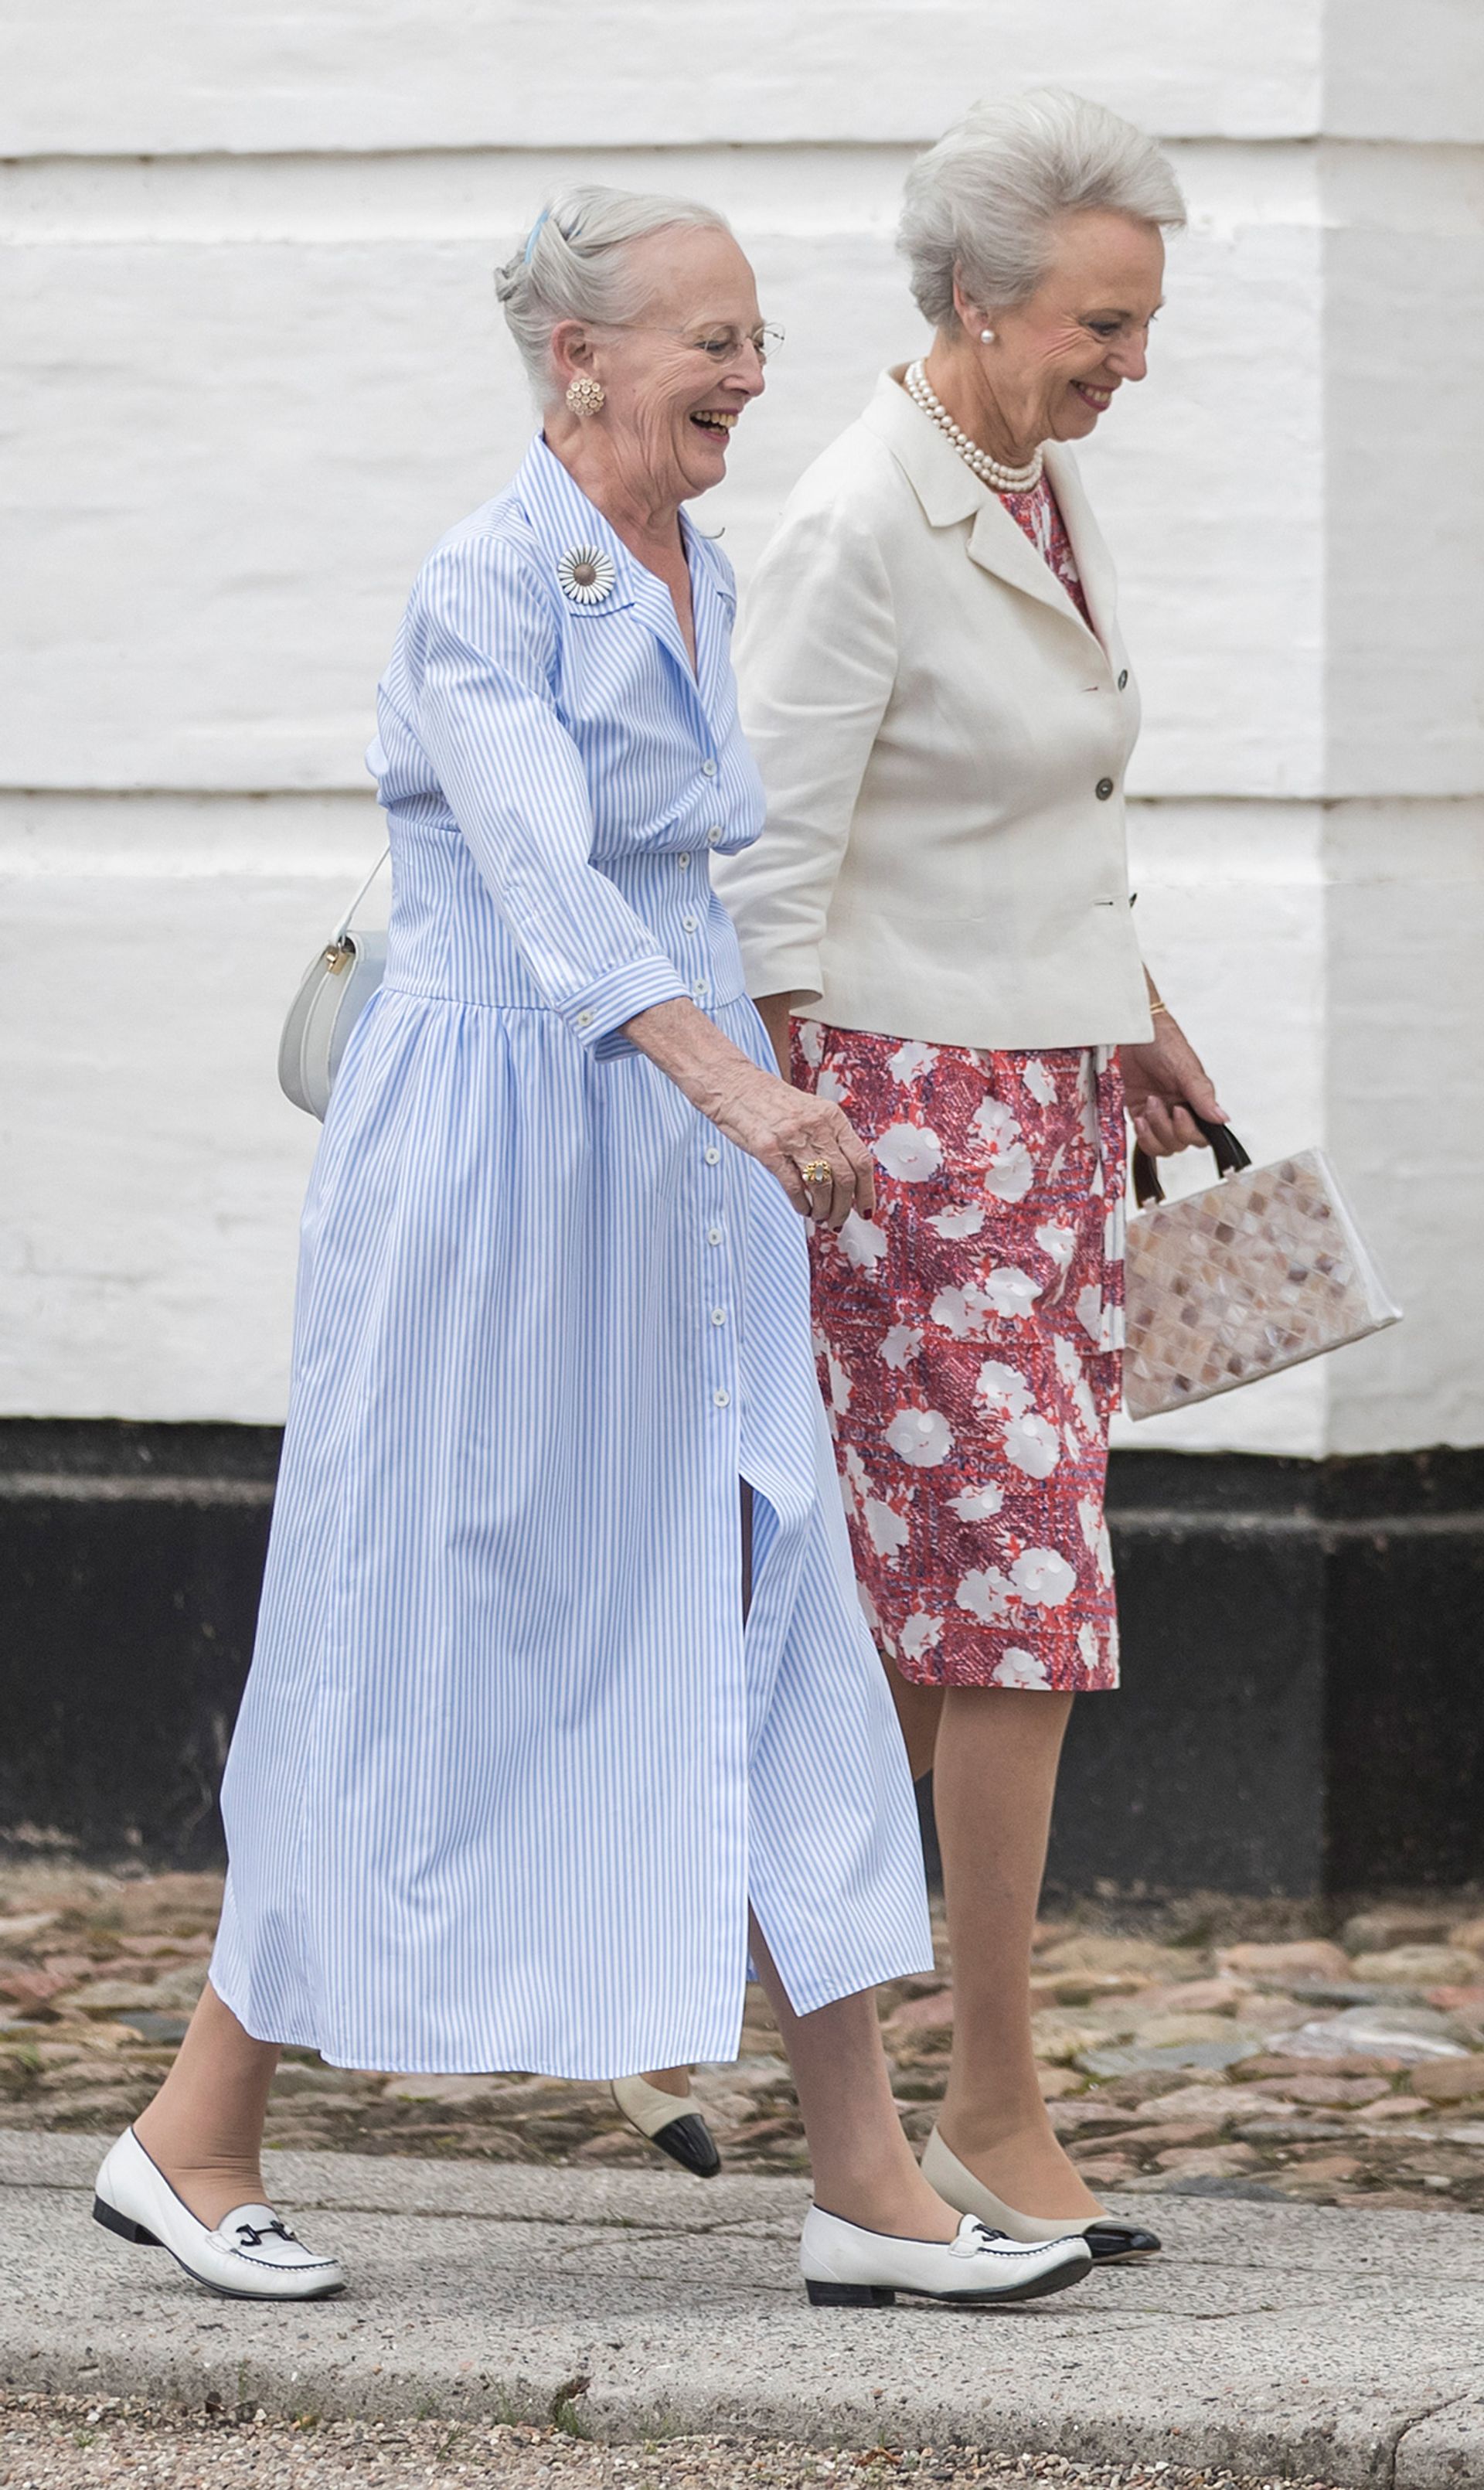 Koningin Margrethe en haar zus Benedikte op weg naar een kerkdienst in Gråsten, juli 2019.